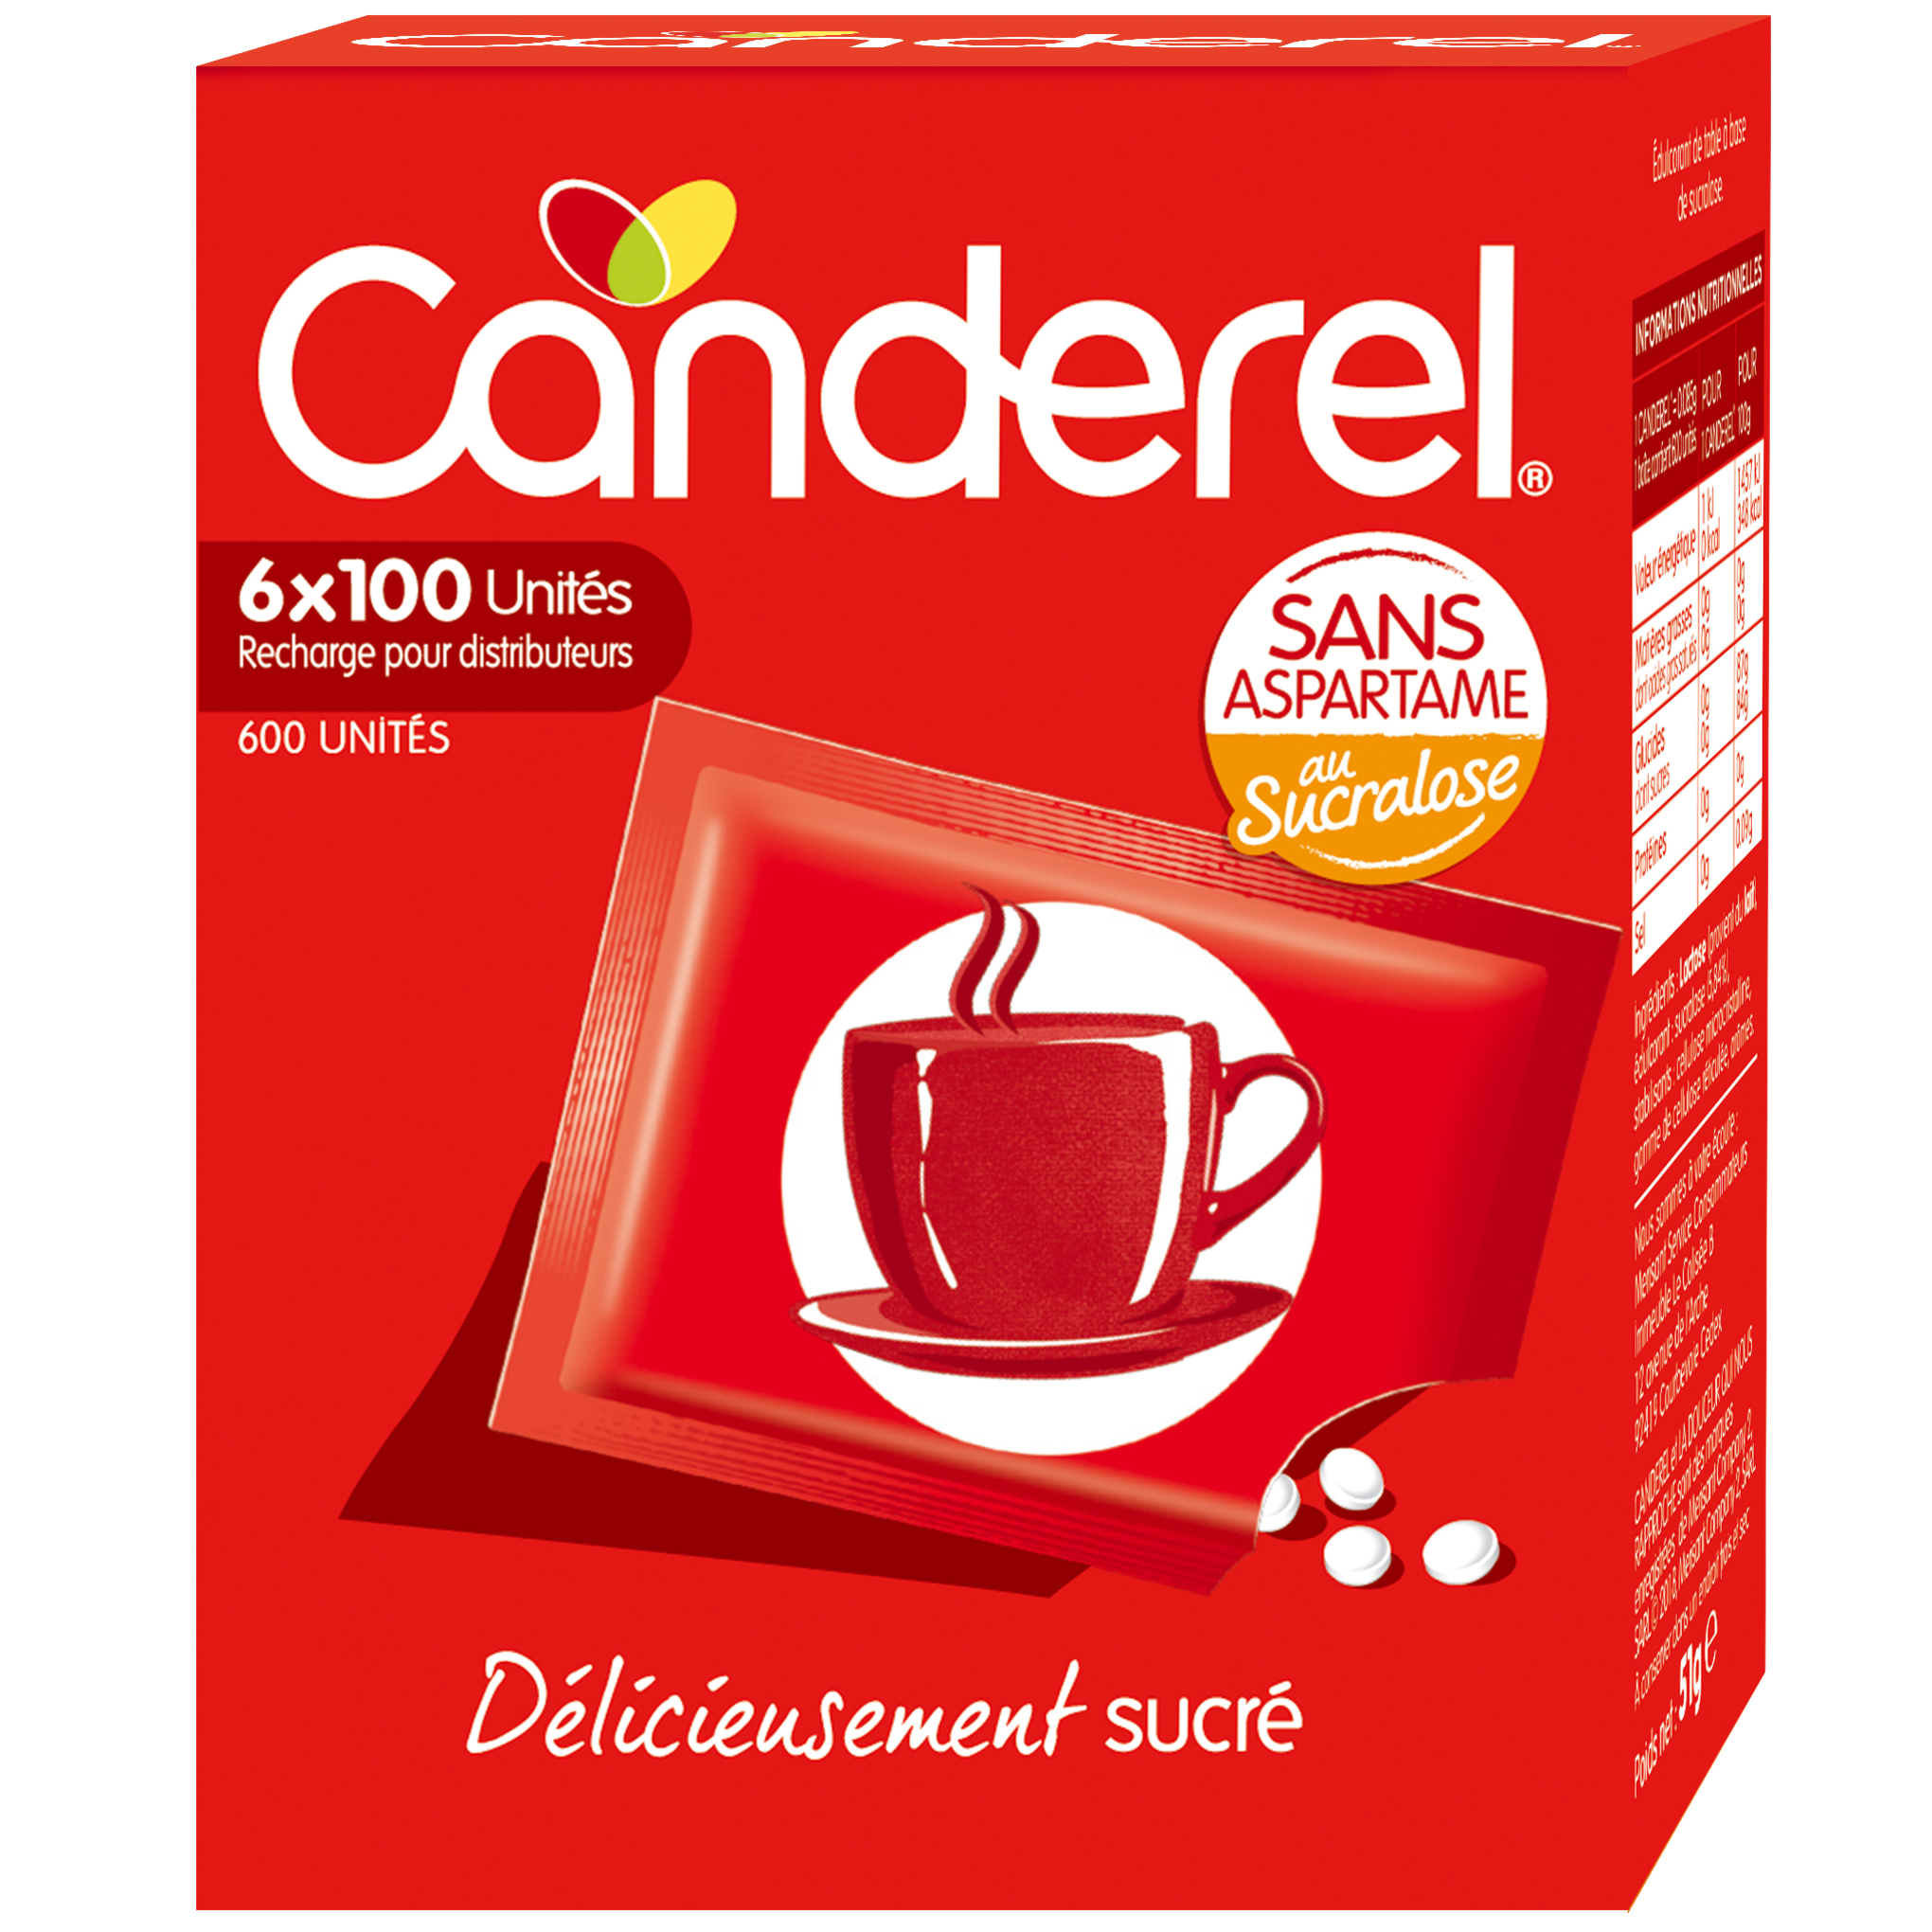 Sucralose au bon goût sucré - Canderel - 6,8 g